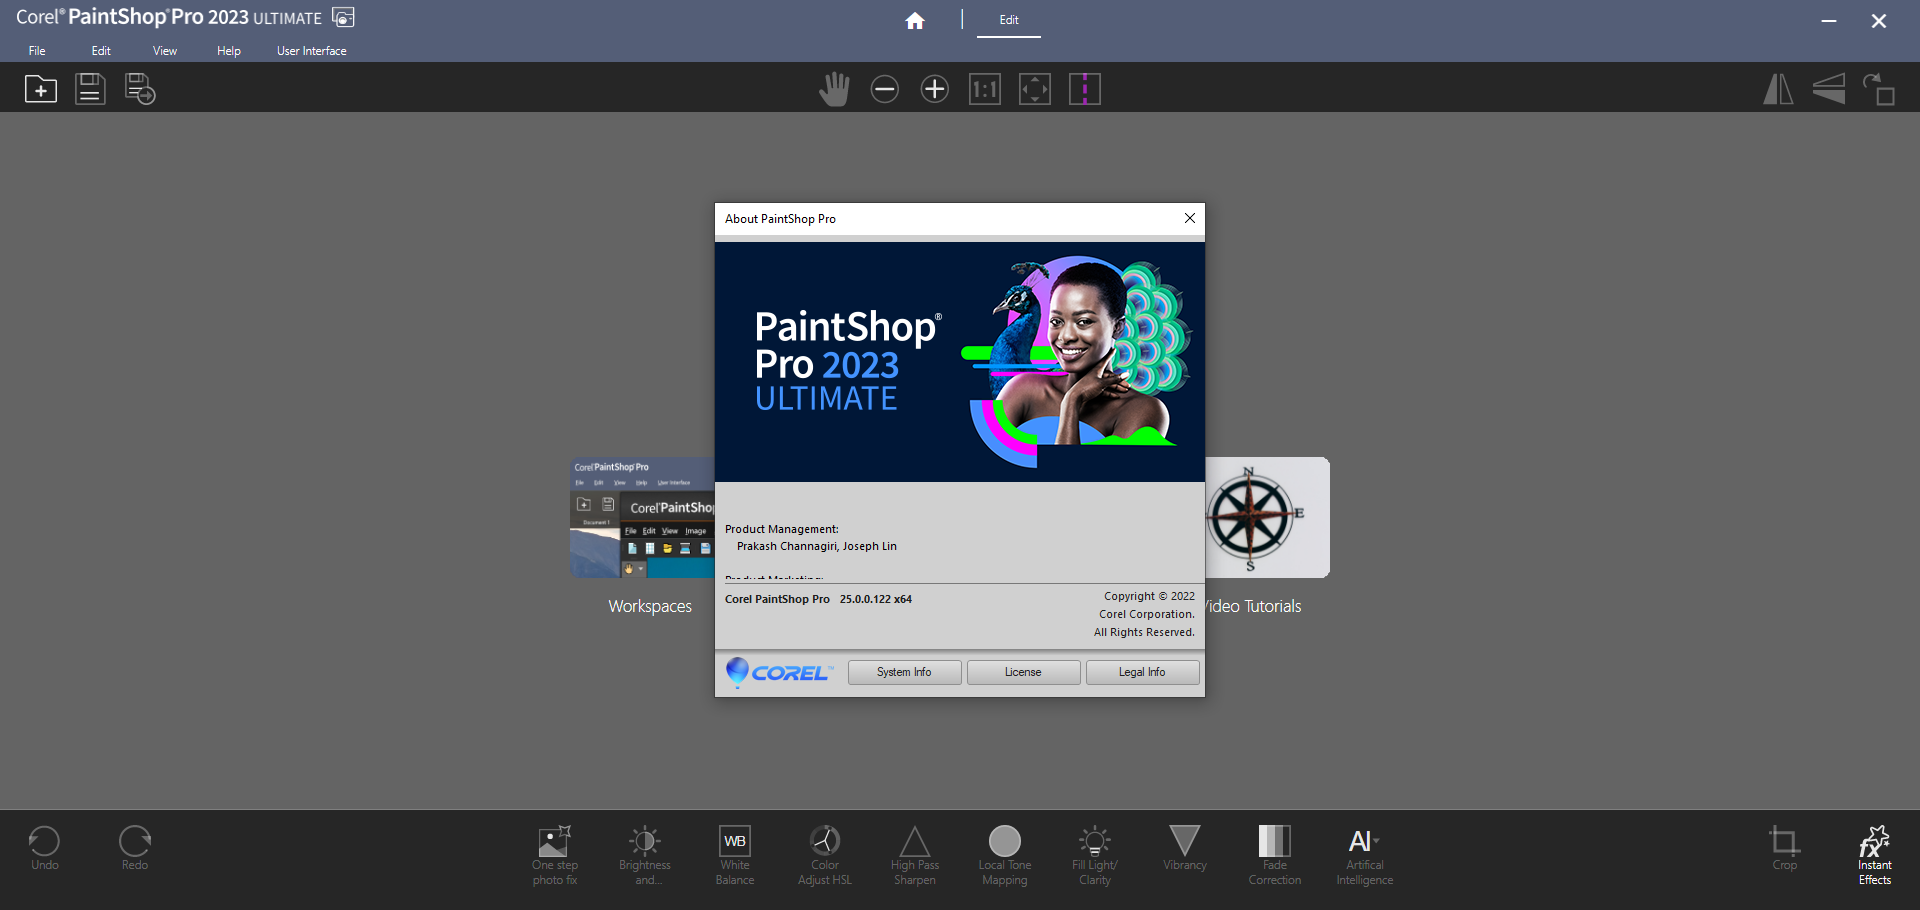 Corel Paintshop 2023 Pro Ultimate 25.2.0.58 download the last version for windows